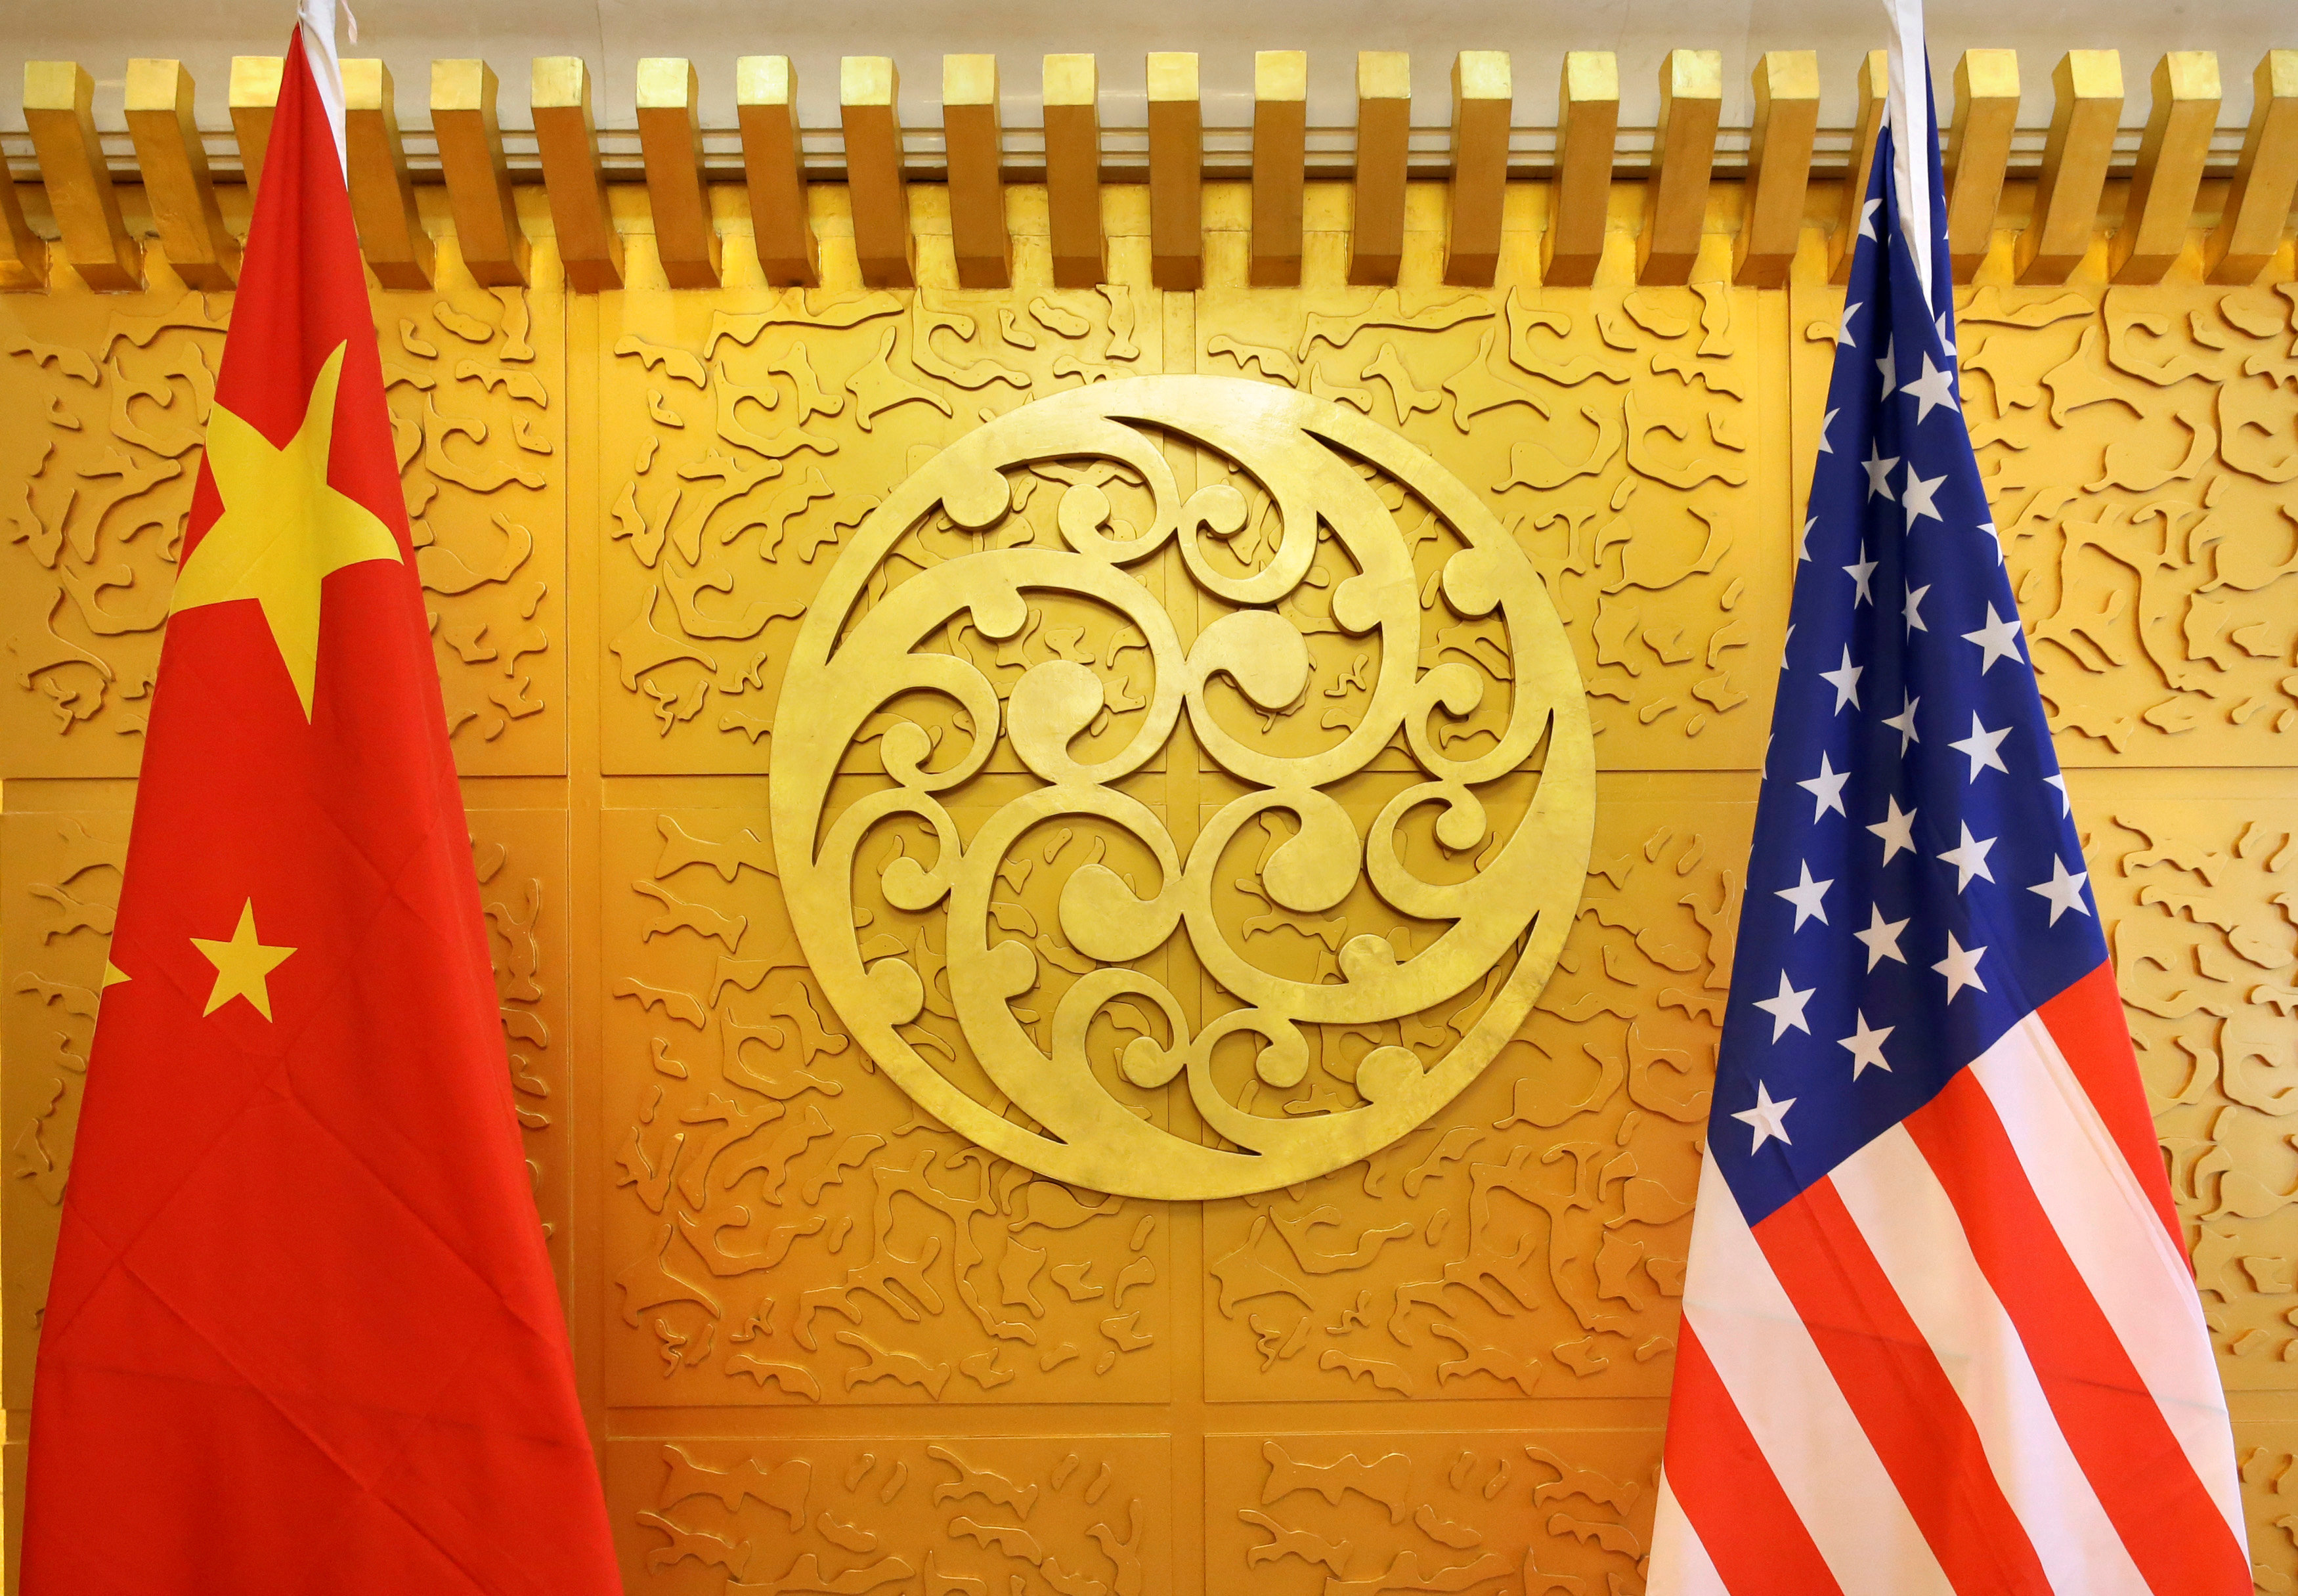 العلمان الصيني والأميركي خلال اجتماع وزيري النقل الأميركي والصيني في بكين، 27 أبريل 2018. رويترز